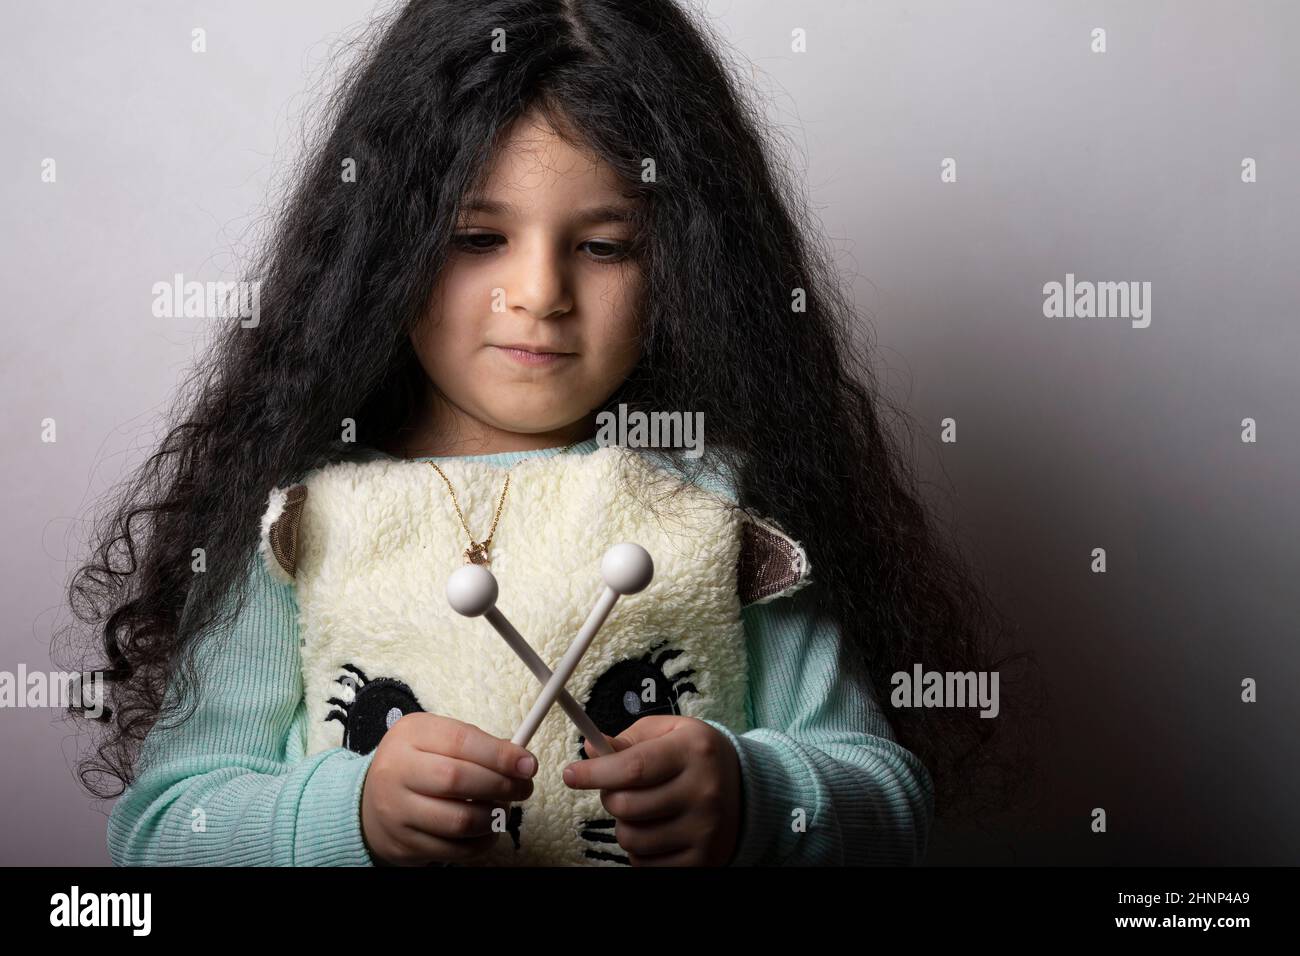 Kleines Mädchenportrait mit Xylophon-Stöcken in der Hand, die nach unten schauen Stockfoto